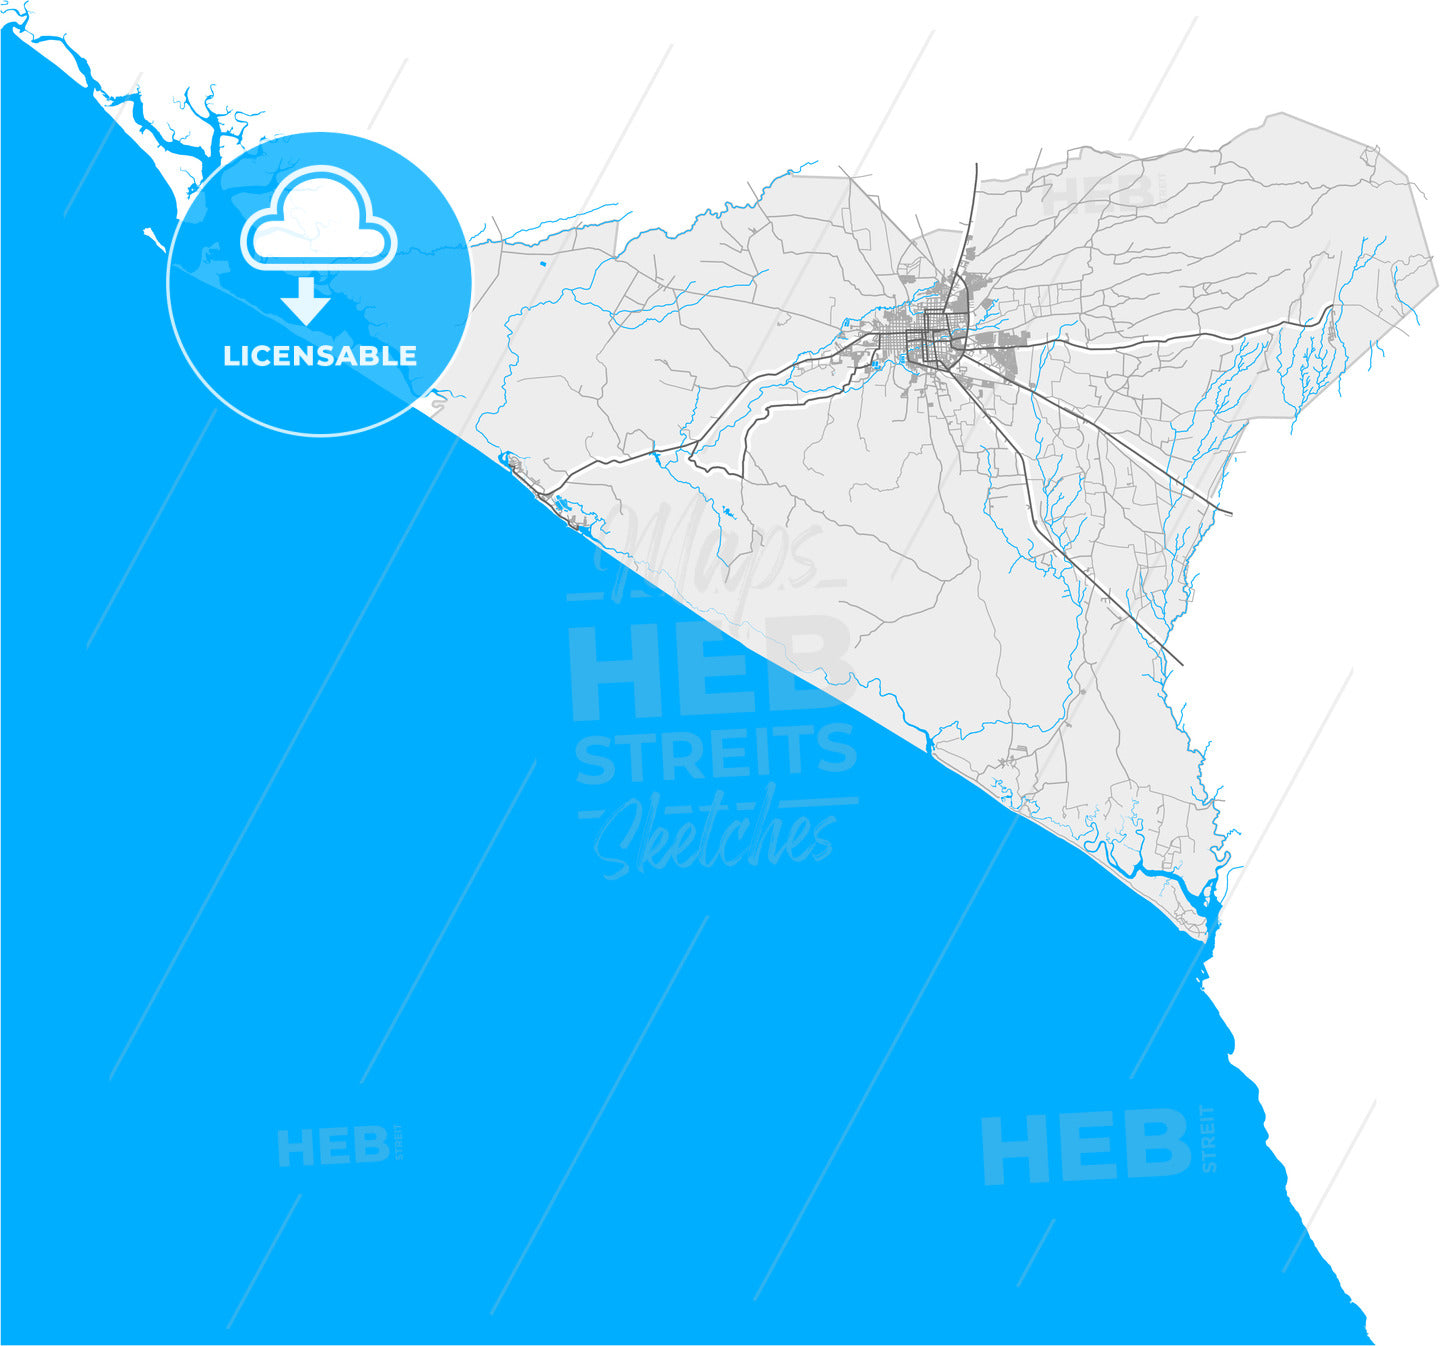 León, León, Nicaragua, high quality vector map